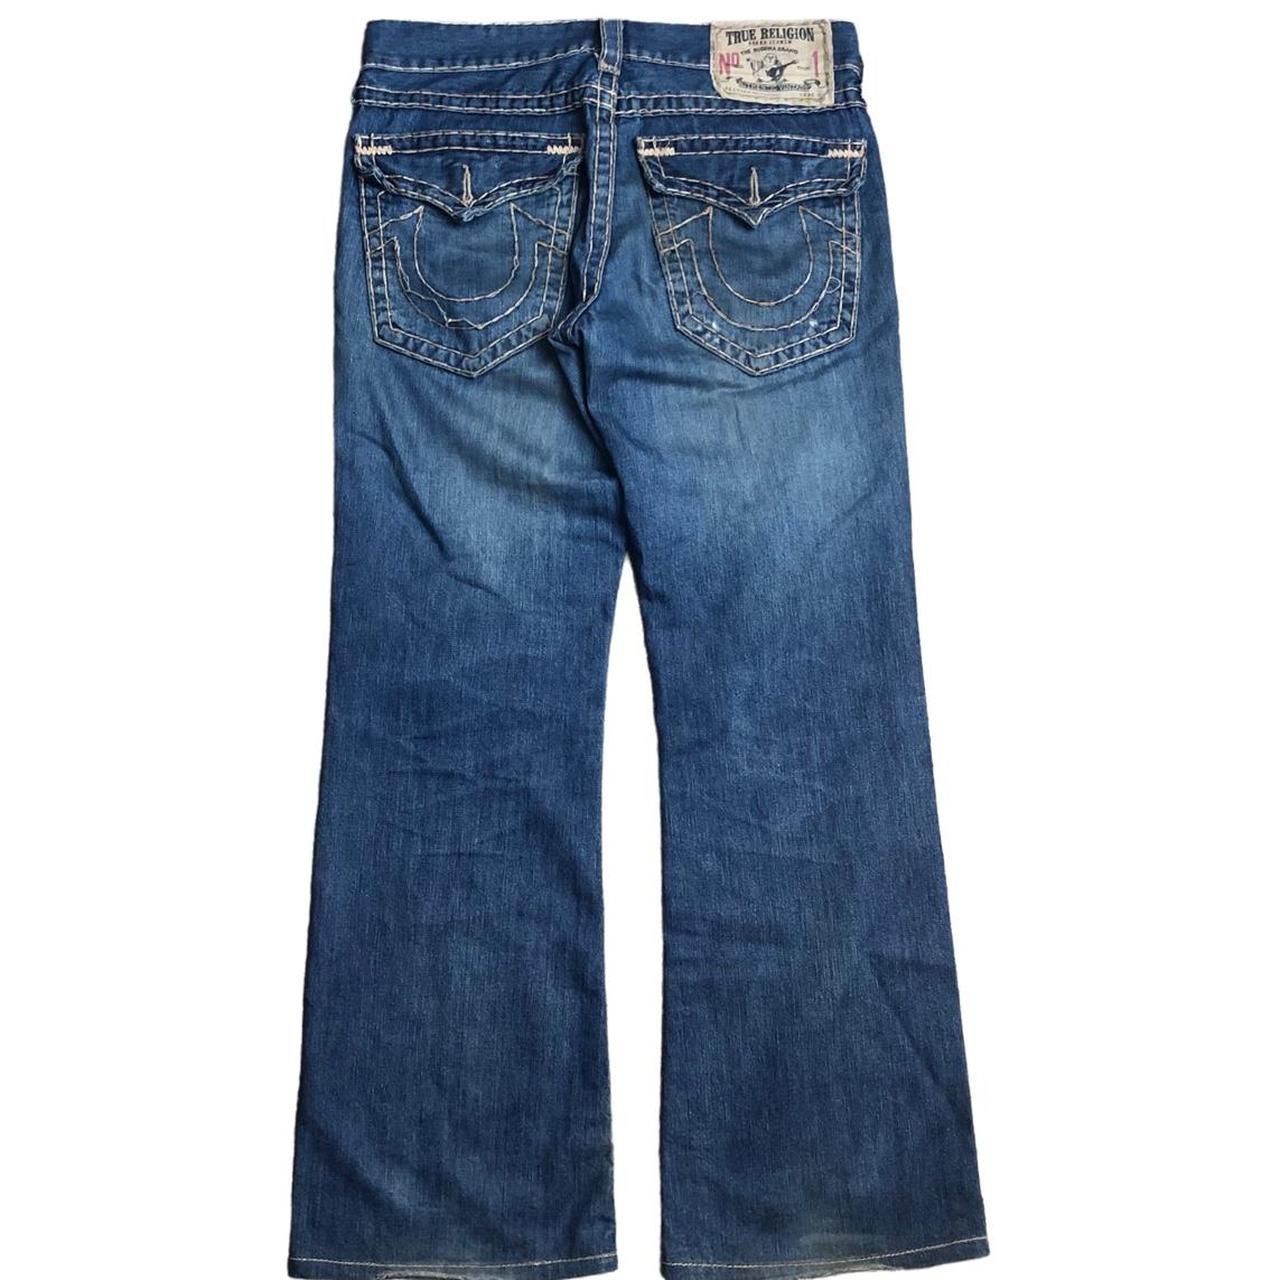 True religion jeans 33 waist Blue baggy true... - Depop